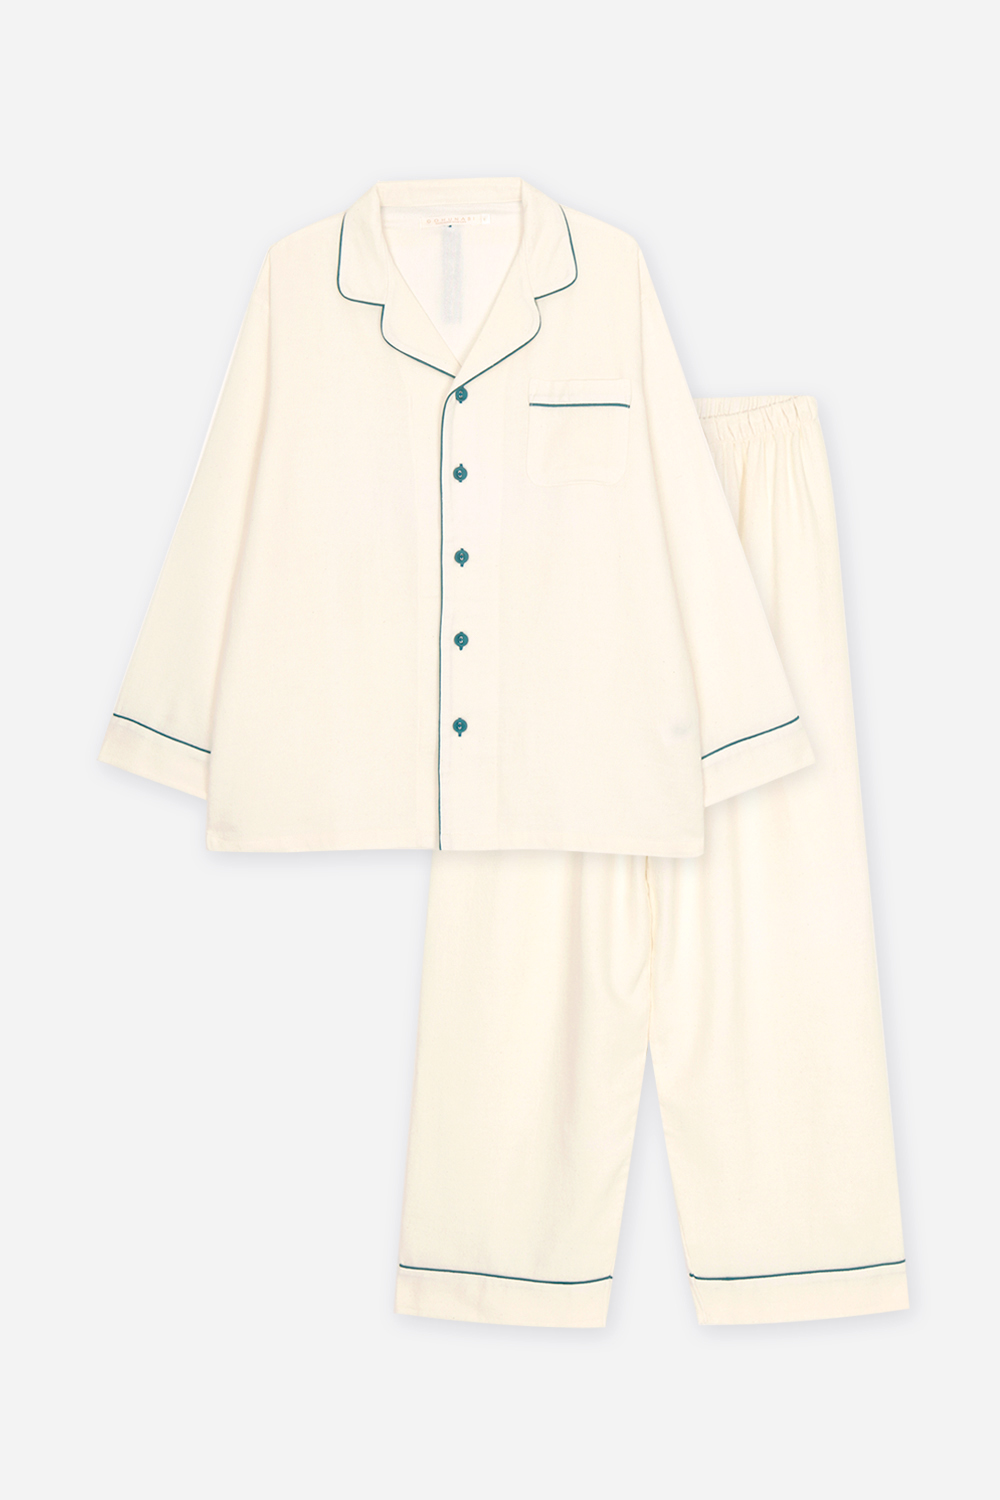 갓블레스유-그린잠옷, 홈웨어, 아동내복, 아동속옷,성인잠옷,고후나비